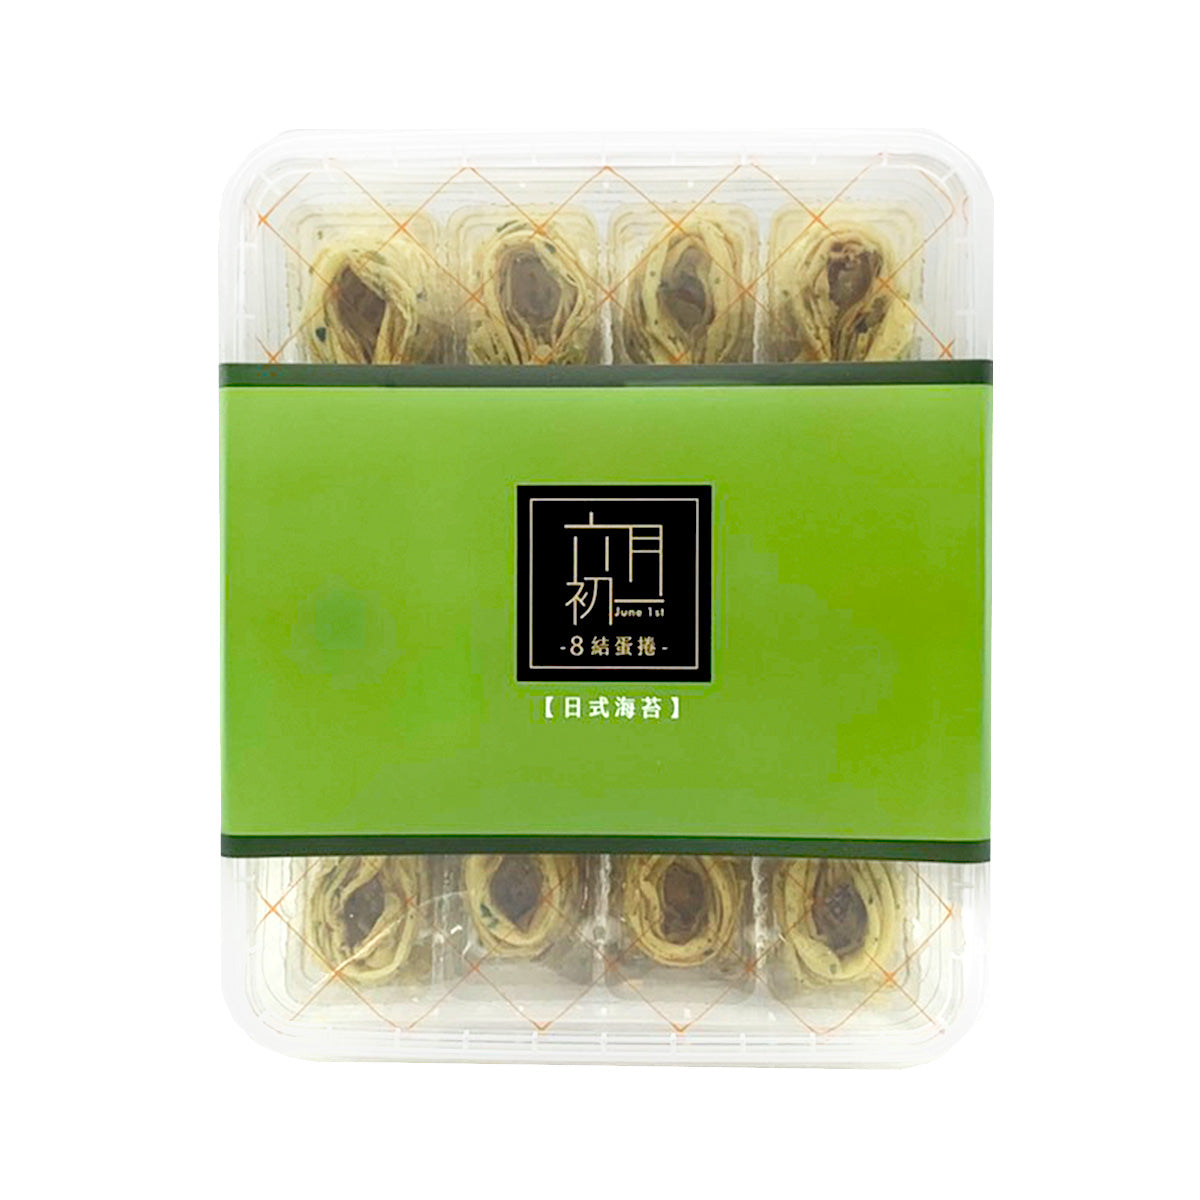 【JUNE 1ST】 Egg Roll (Seaweed) 320g